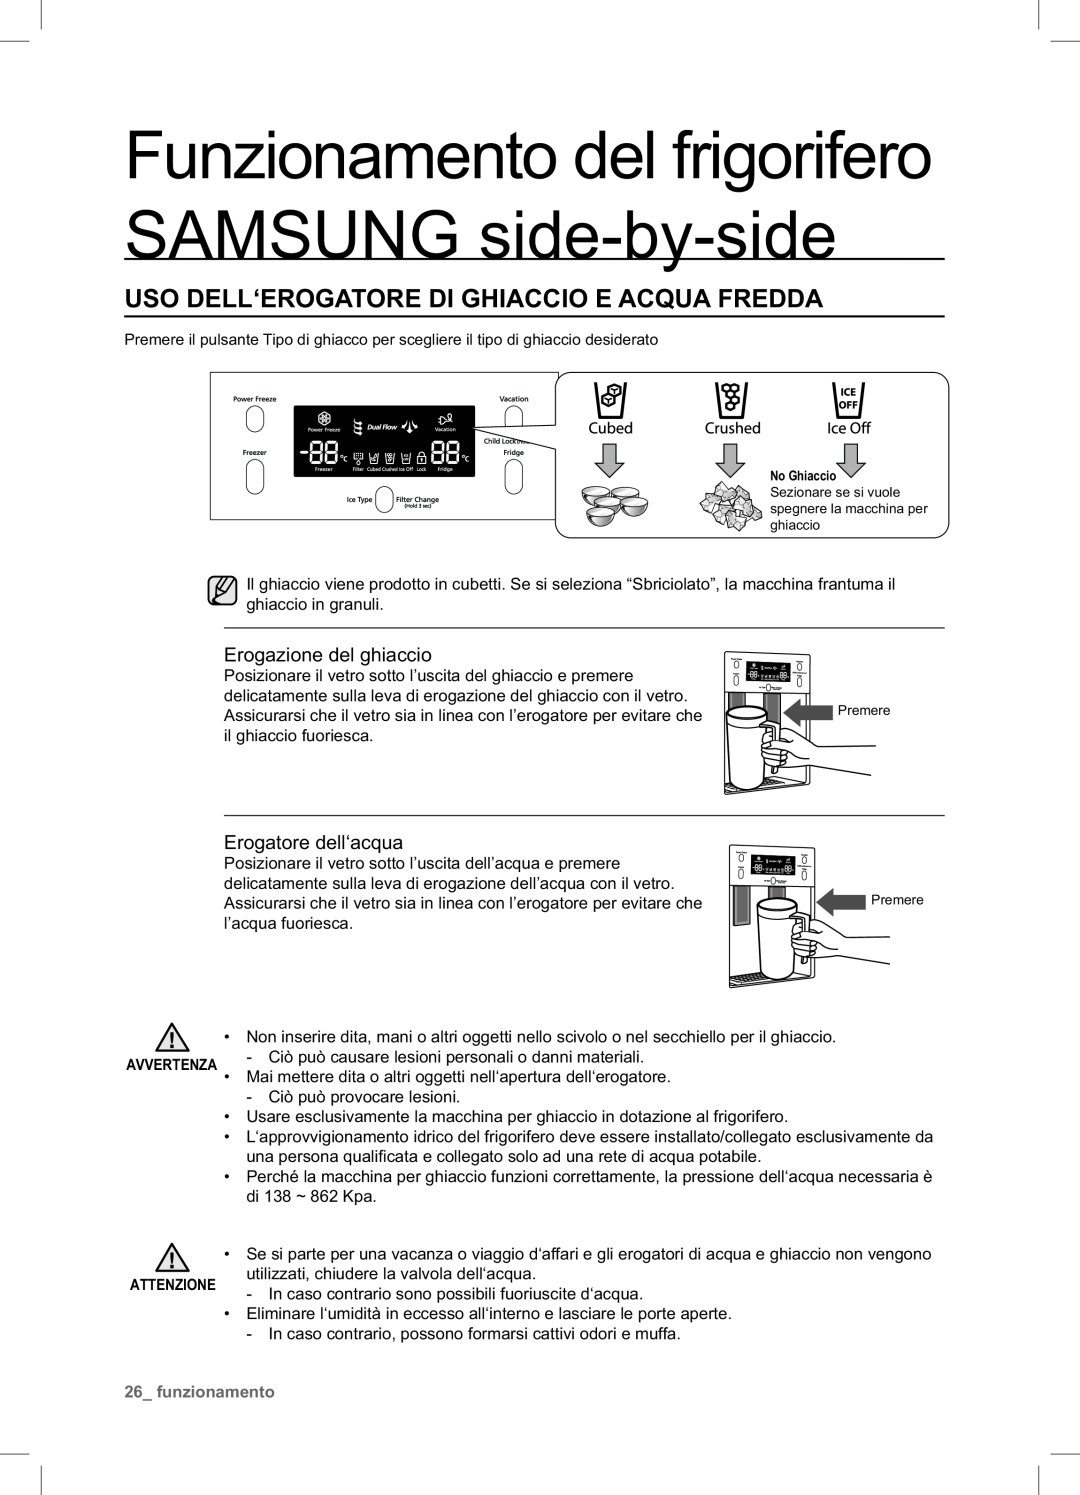 Samsung RSA1NTPE1/XES Uso Dell‘Erogatore Di Ghiaccio E Acqua Fredda, Funzionamento del frigorifero SAMSUNG side-by-side 